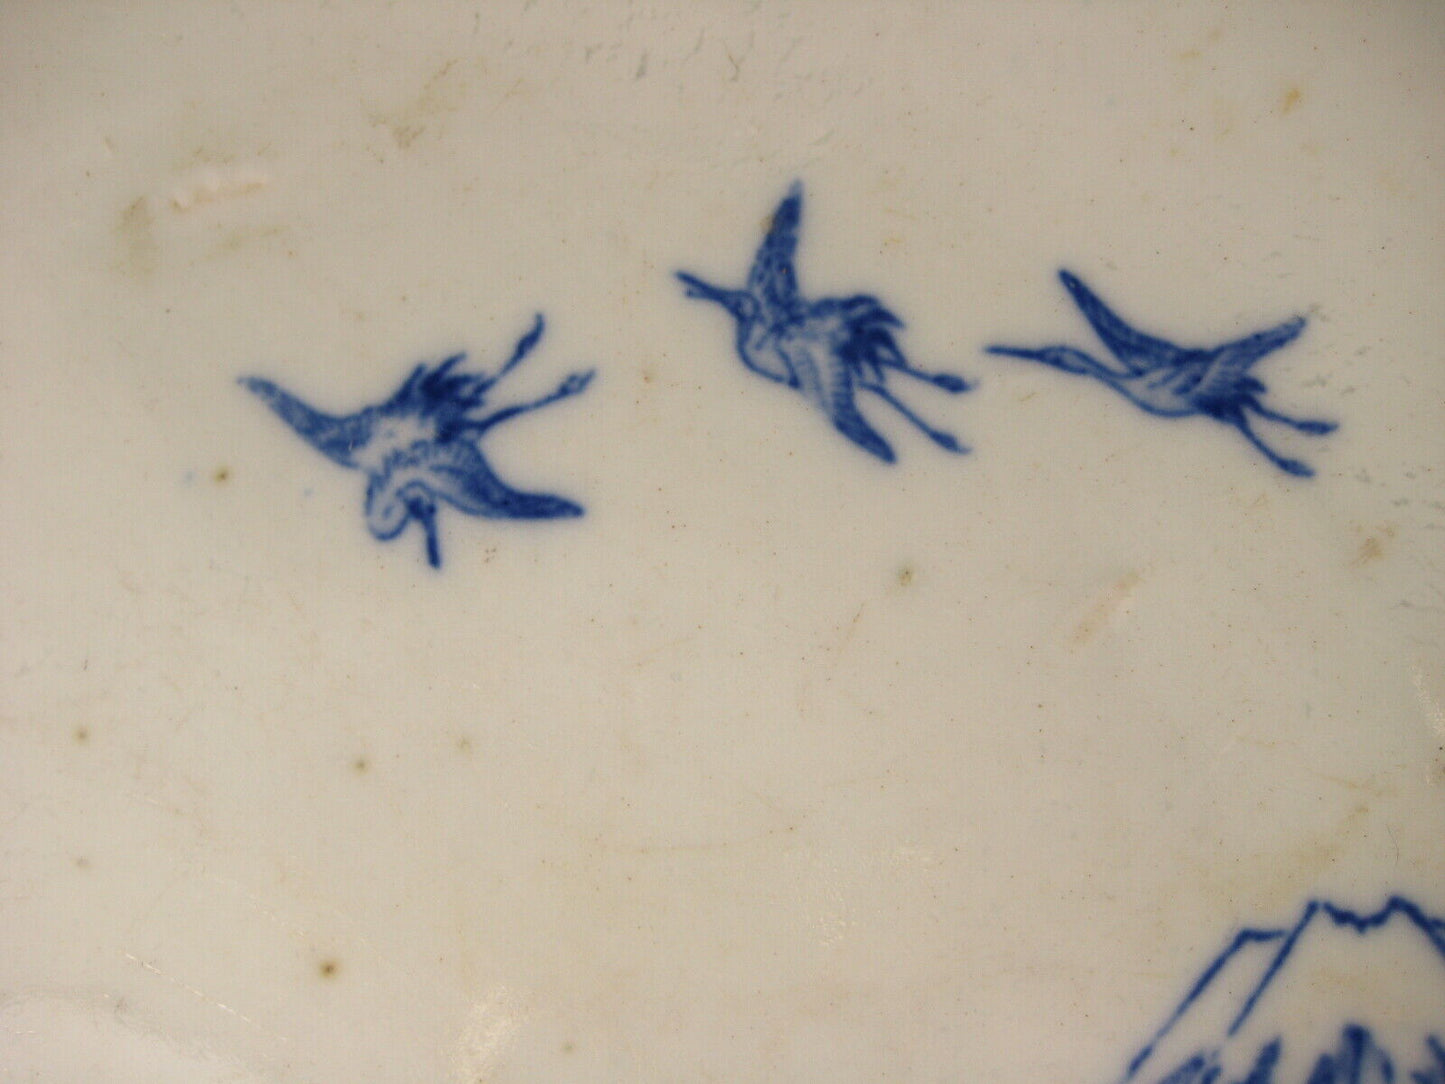 Antique c1900 Meiji Era Japanese Ceramic Imari Plate Cranes Pine & Mt Fuji